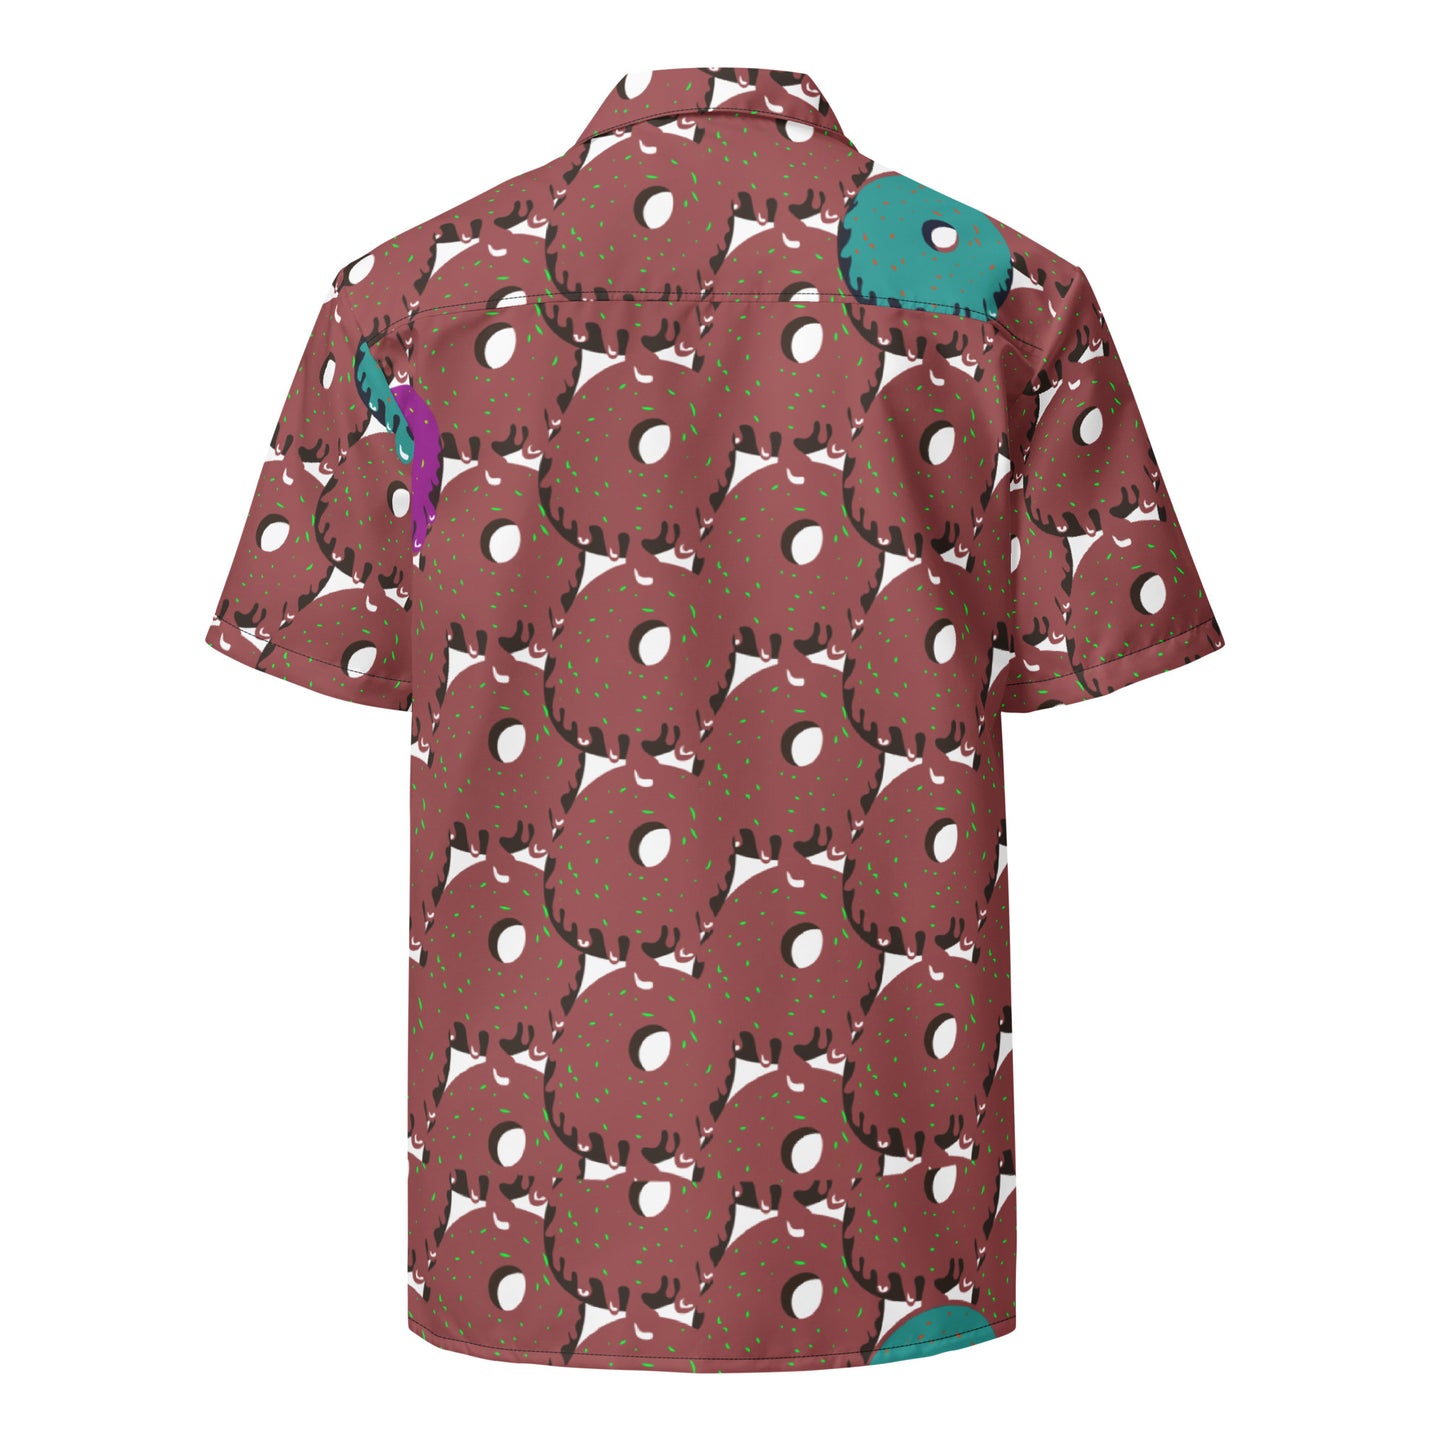 Donut Unisex button shirt